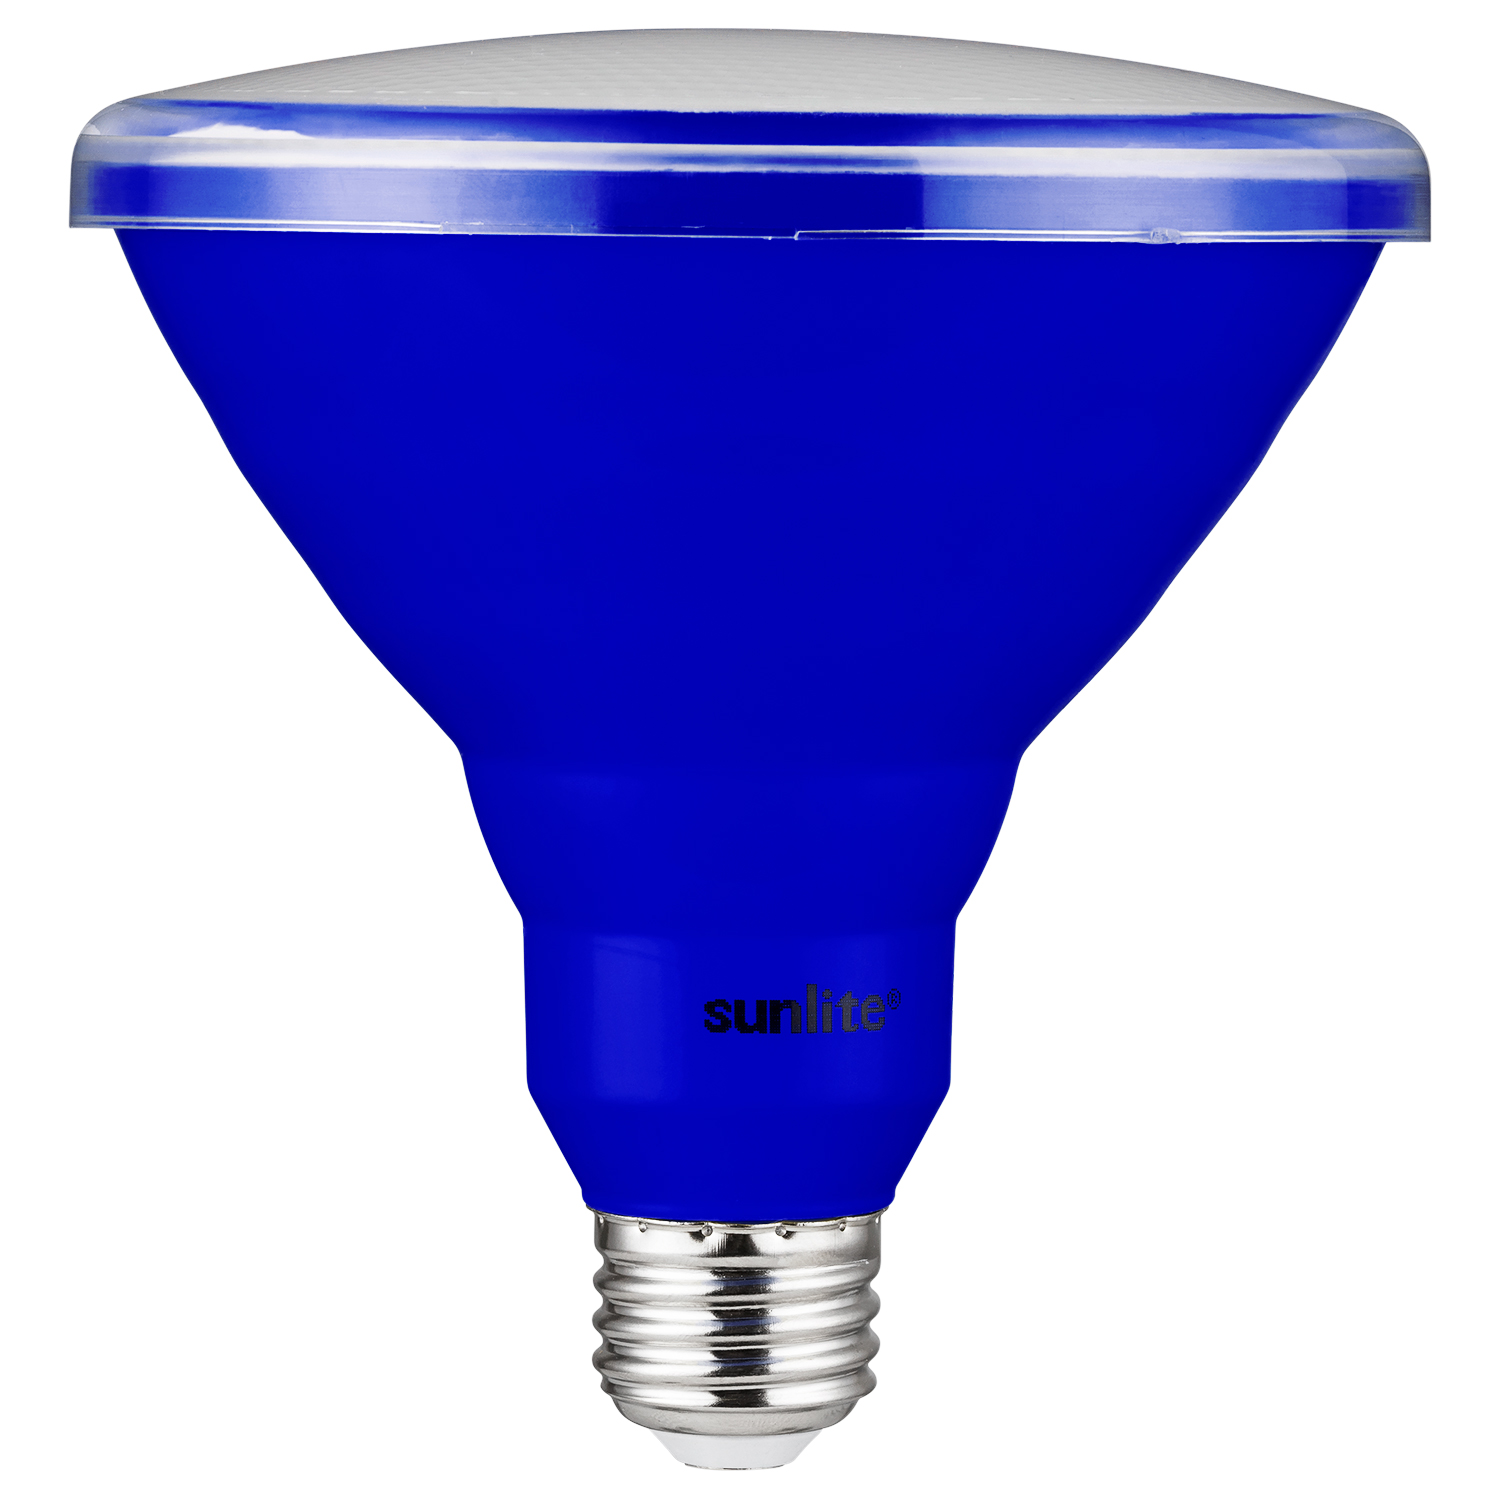 LED PAR38 Short Neck Blue Recessed Light Bulb, 15 Watt Med E26